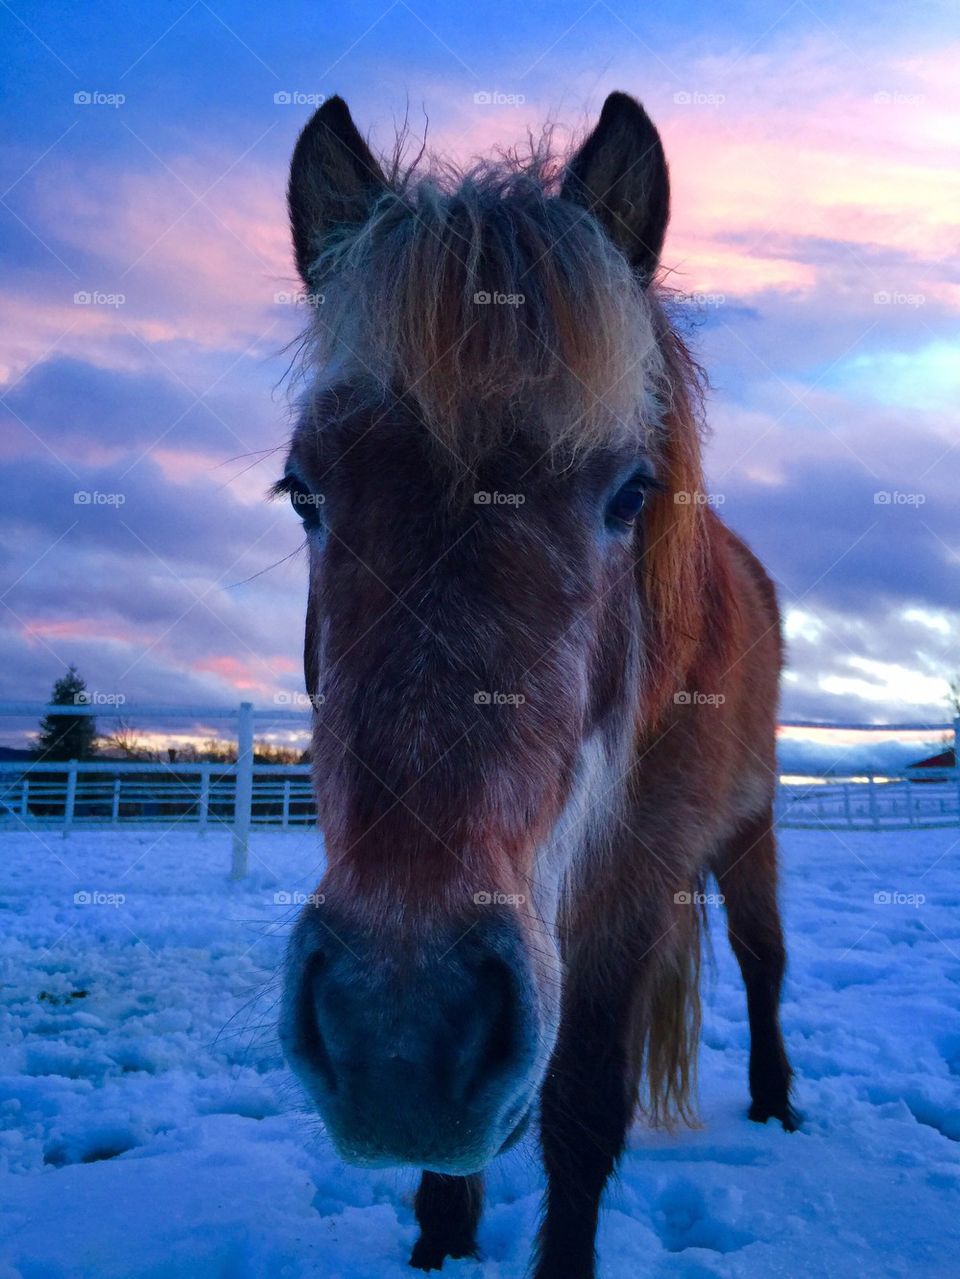 Horse in winter wonderland 